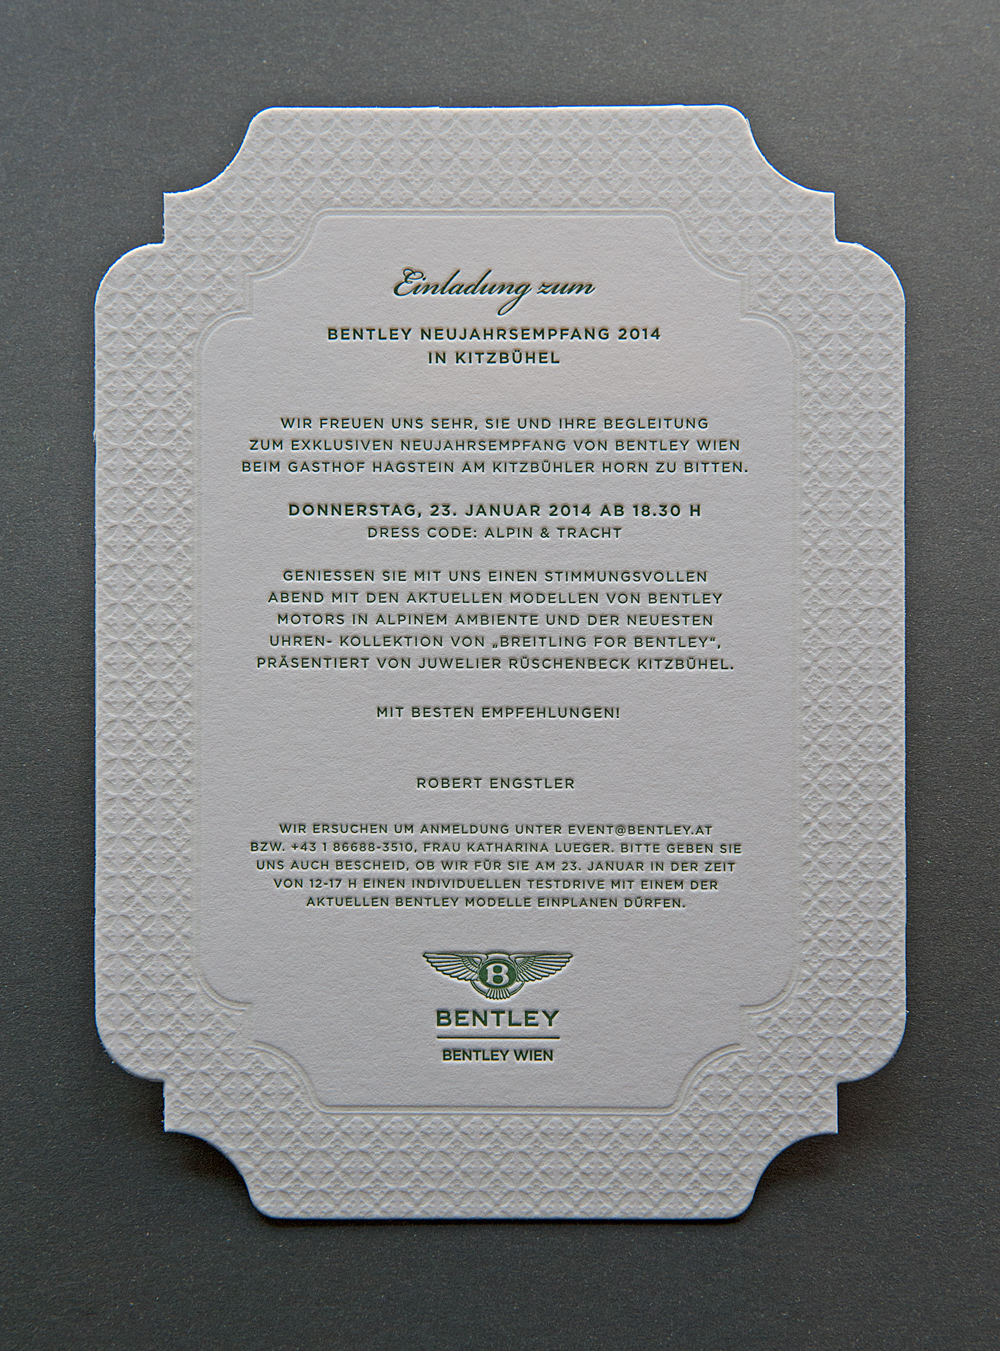 Bentley Wien Einladung